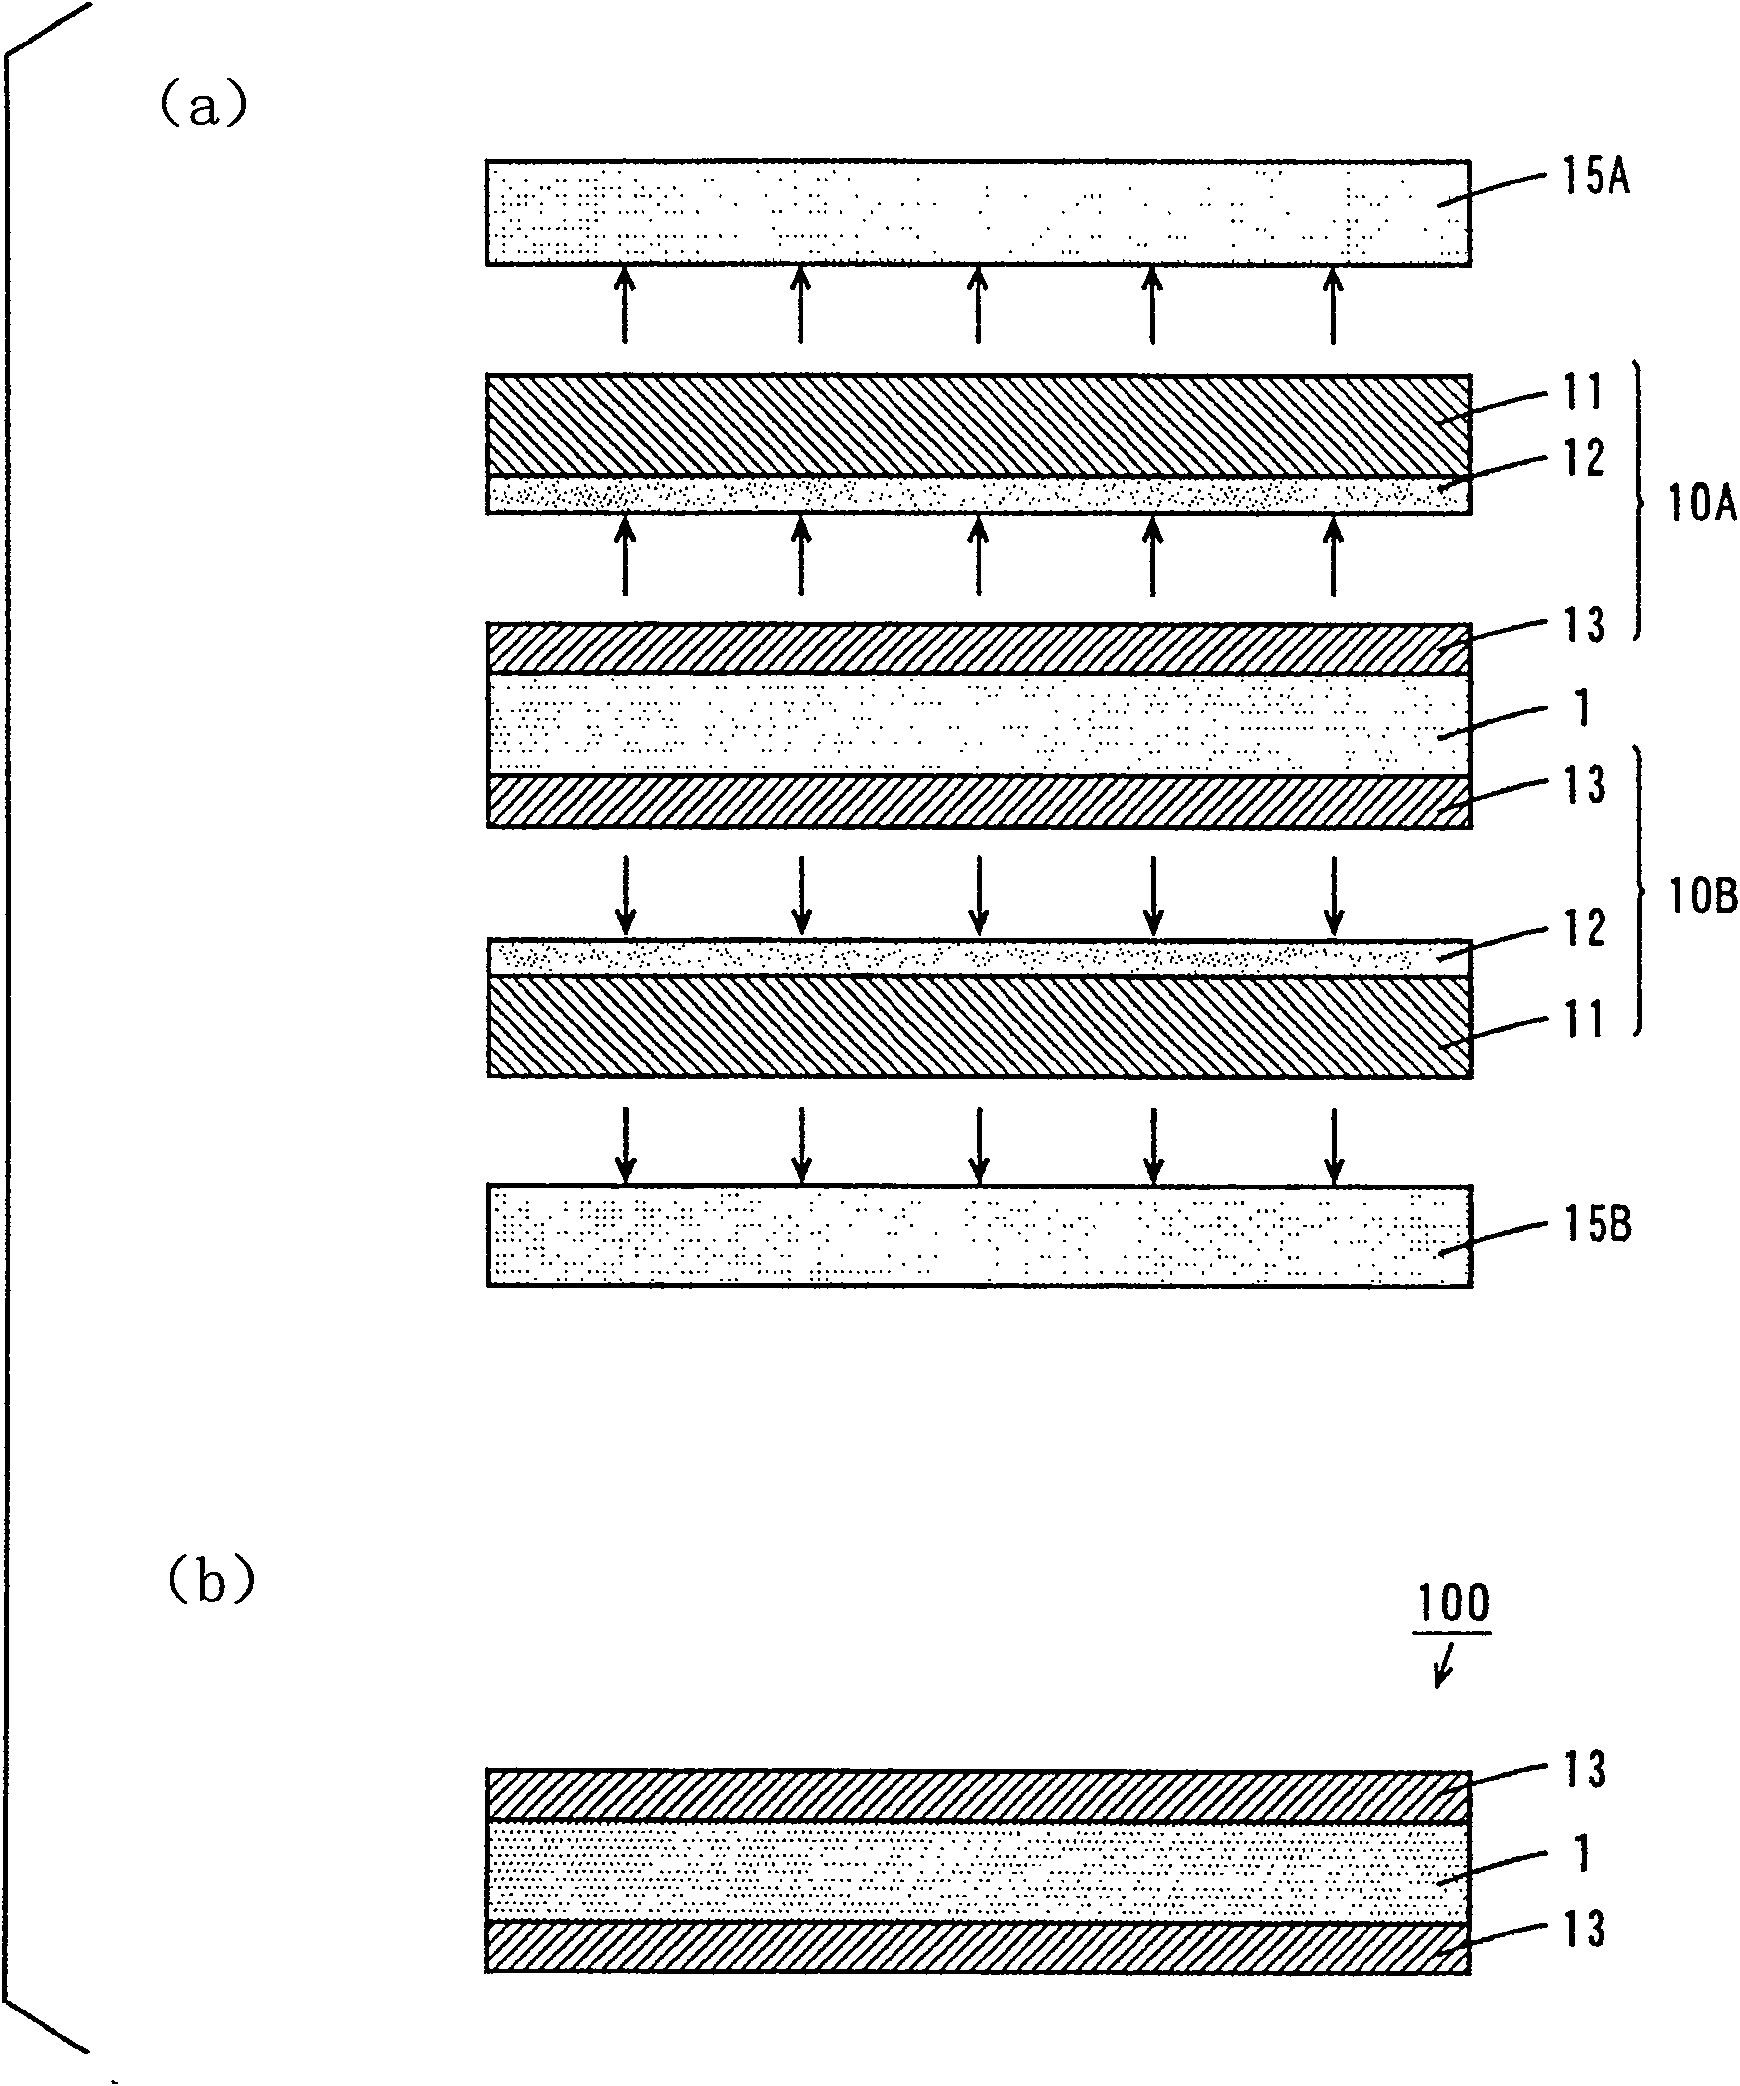 Method of manufacturing printed circuit board base sheet